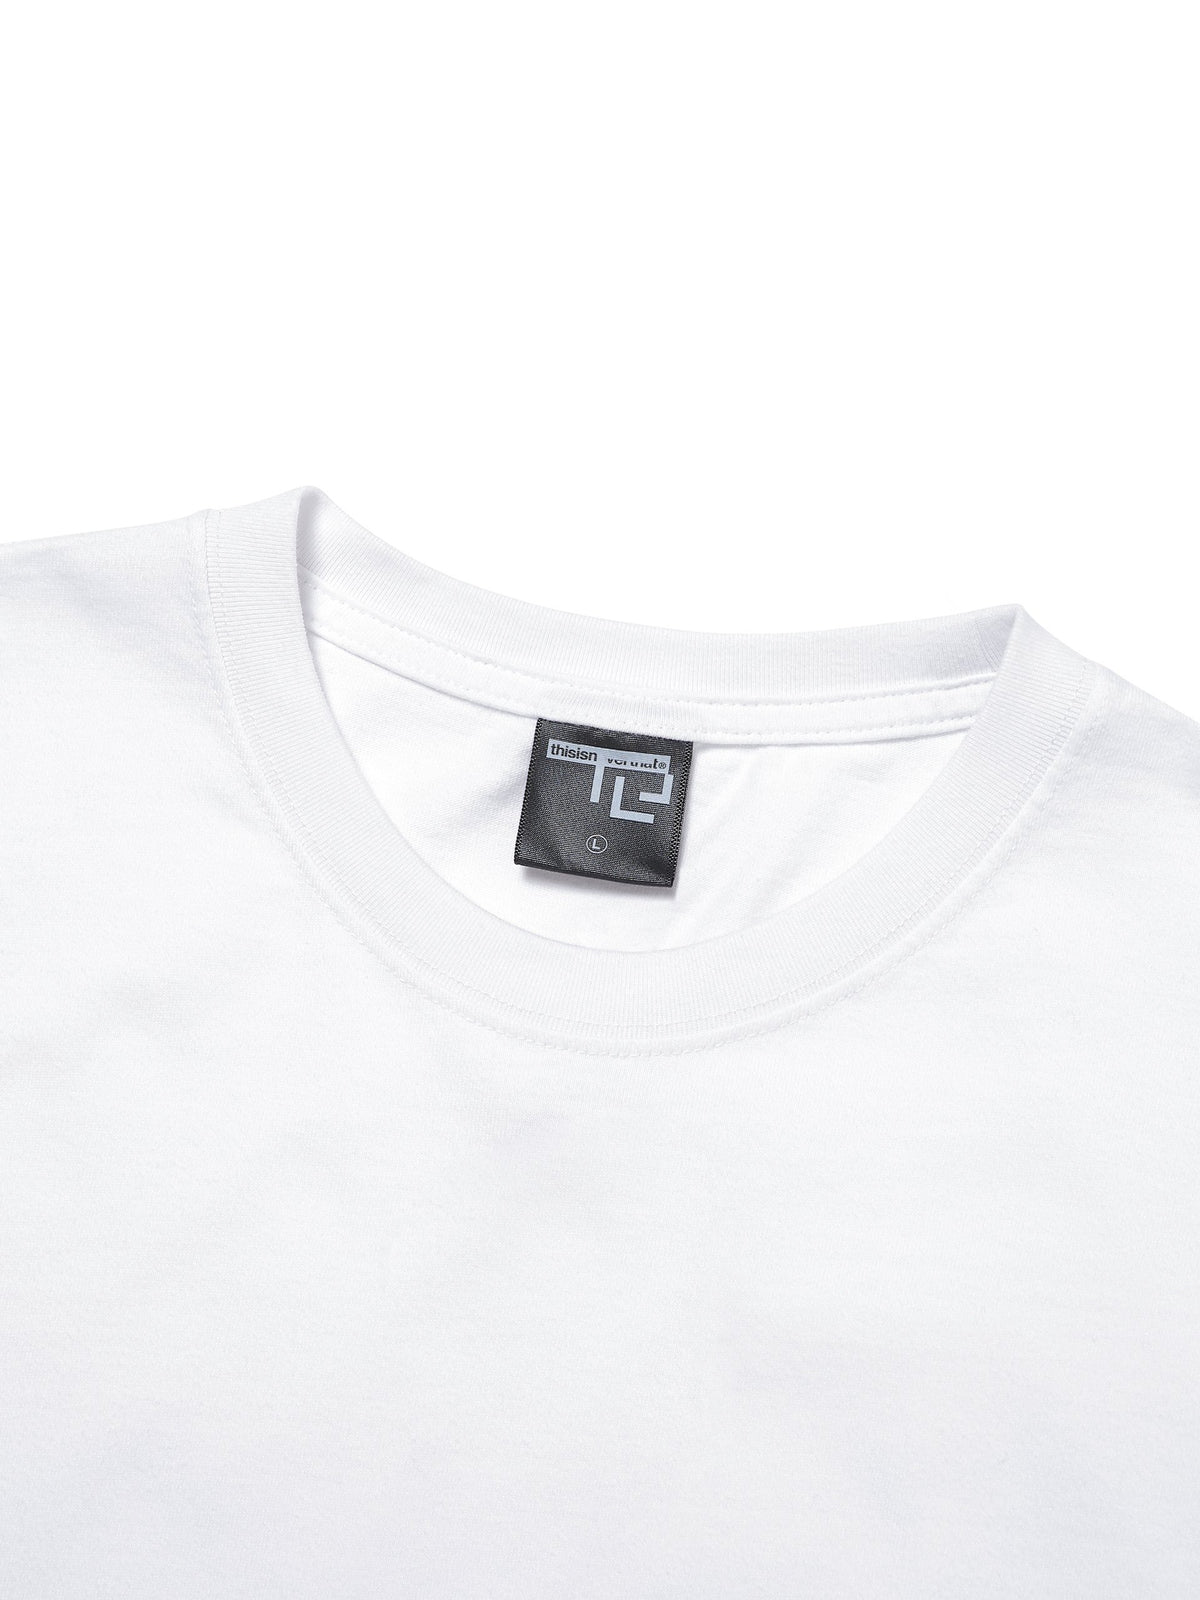 TNT x RAMIDUS L/SL Tee L/SL T-Shirt 